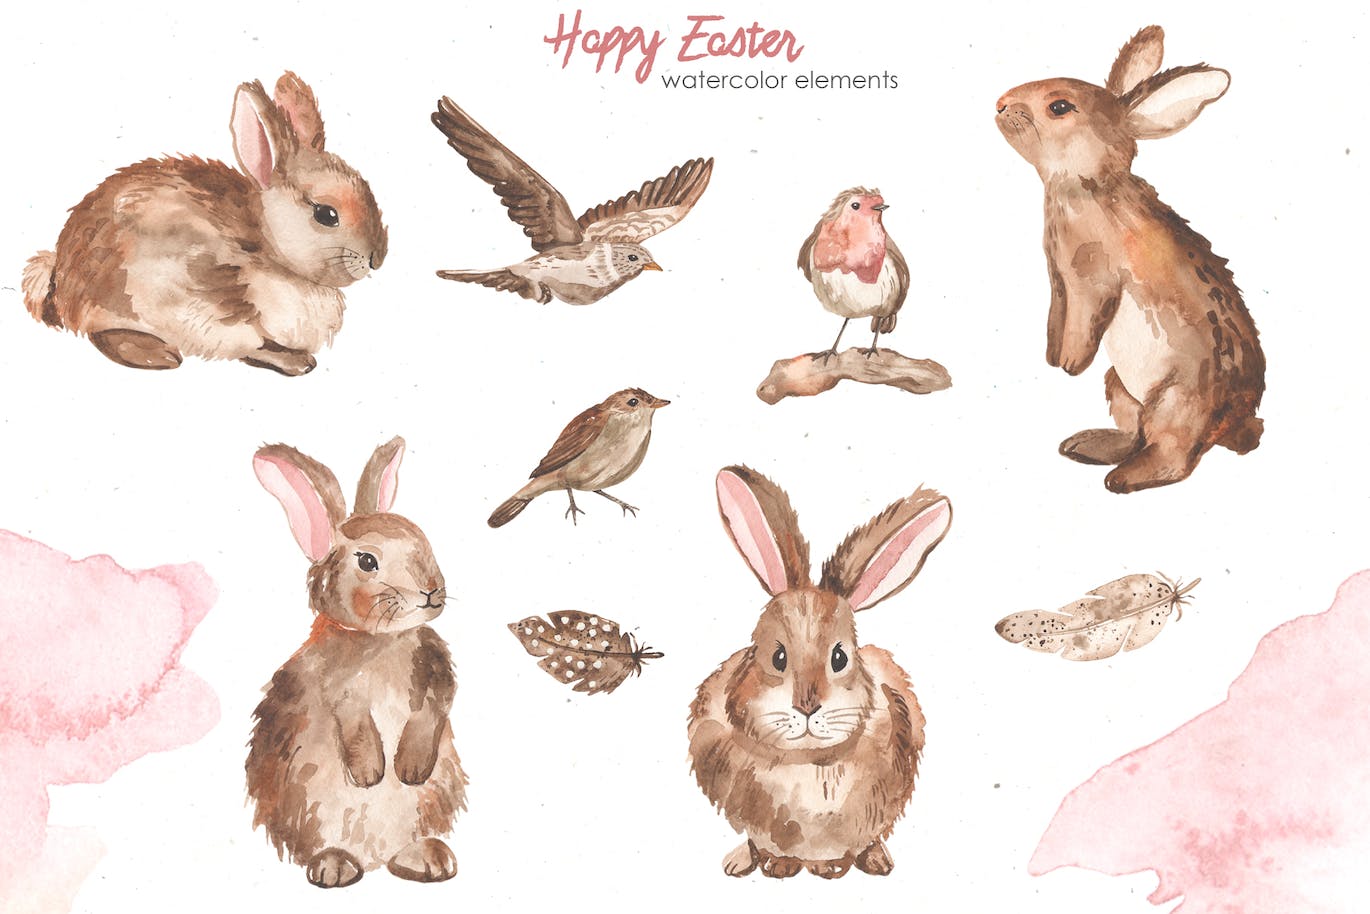 复活节快乐元素水彩画集 Happy Easter watercolor-9